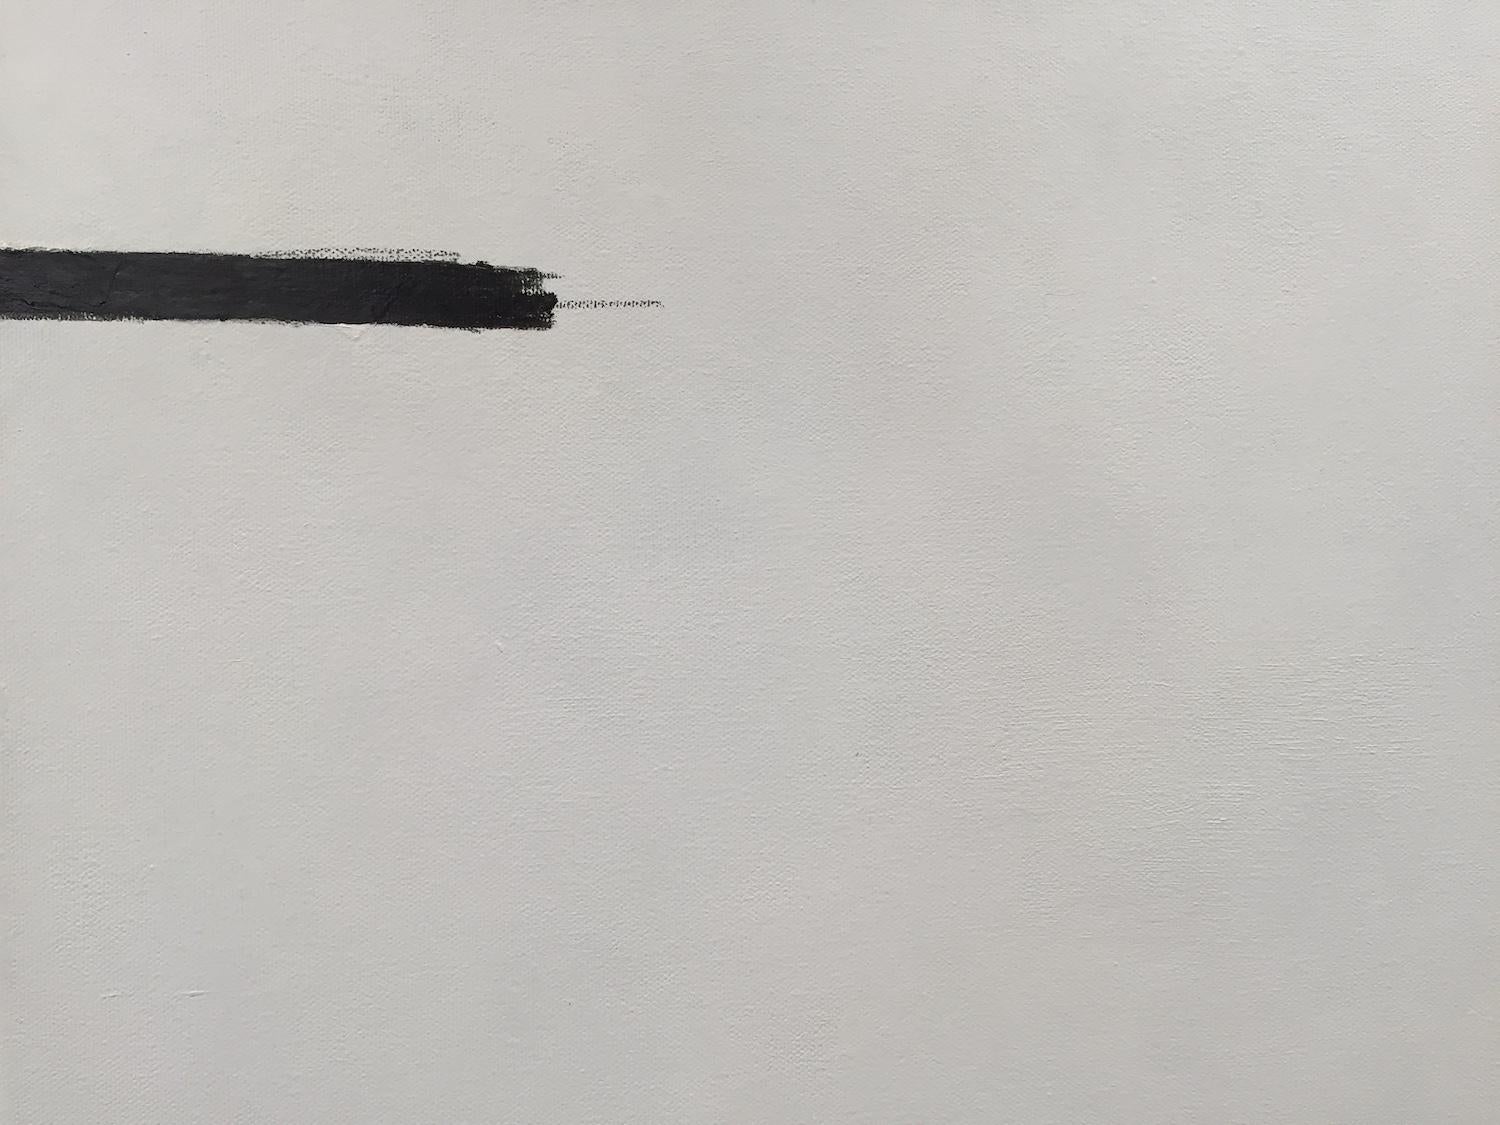 C'est là que je dessine la ligne - 4 peintures abstraites minimalistes, blanc cassé, noires - Gris Abstract Painting par Andrea Stajan-Ferkul